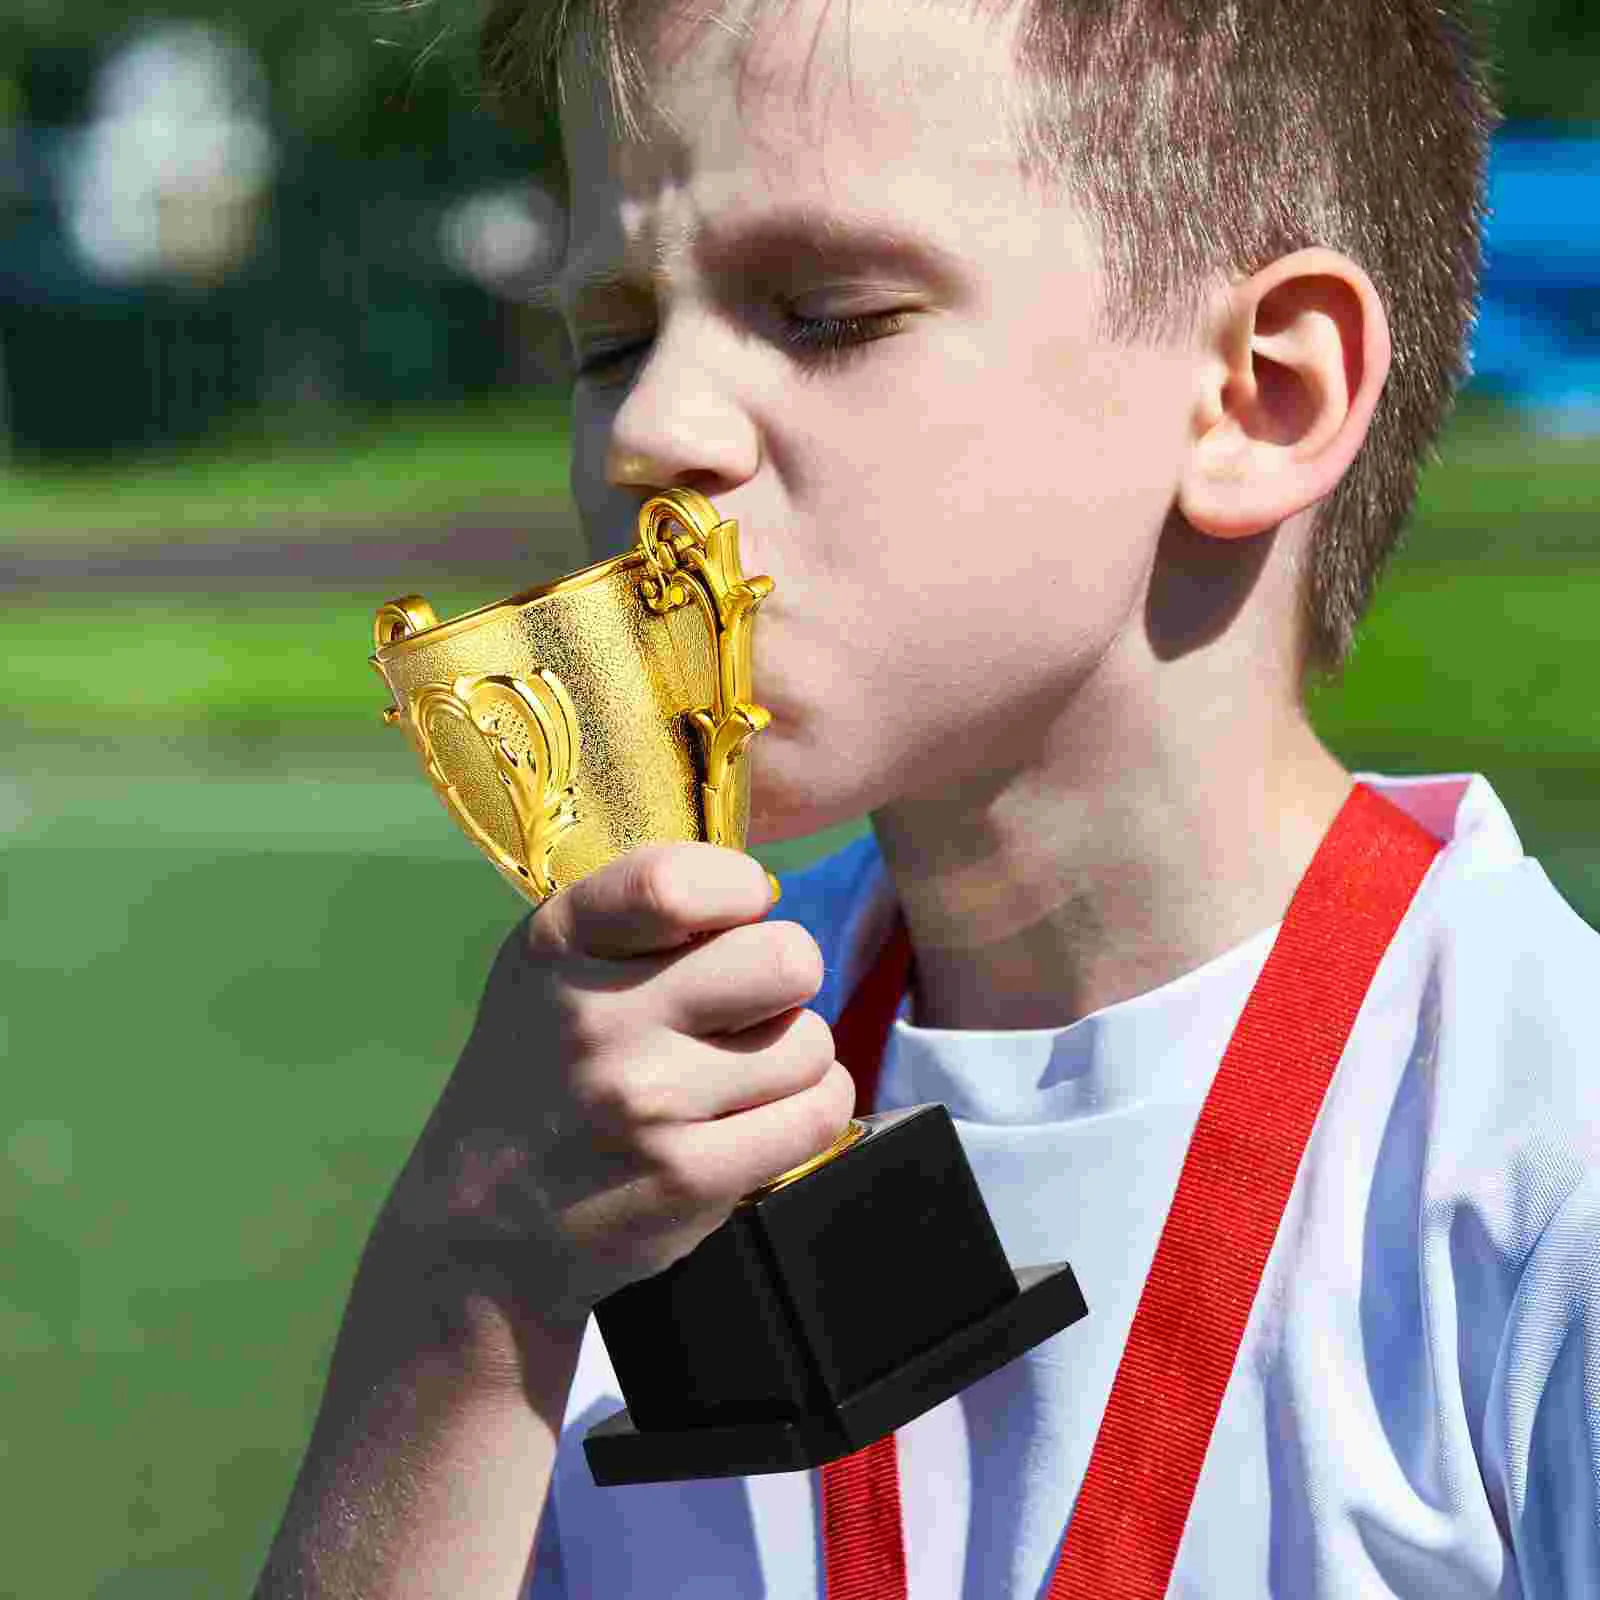 

Трофей, награды, пластиковый Кубок, награды для детей, золотые награды, награды, кубки, подарки, детские спортивные чаши, пластиковые искусственные футбольные